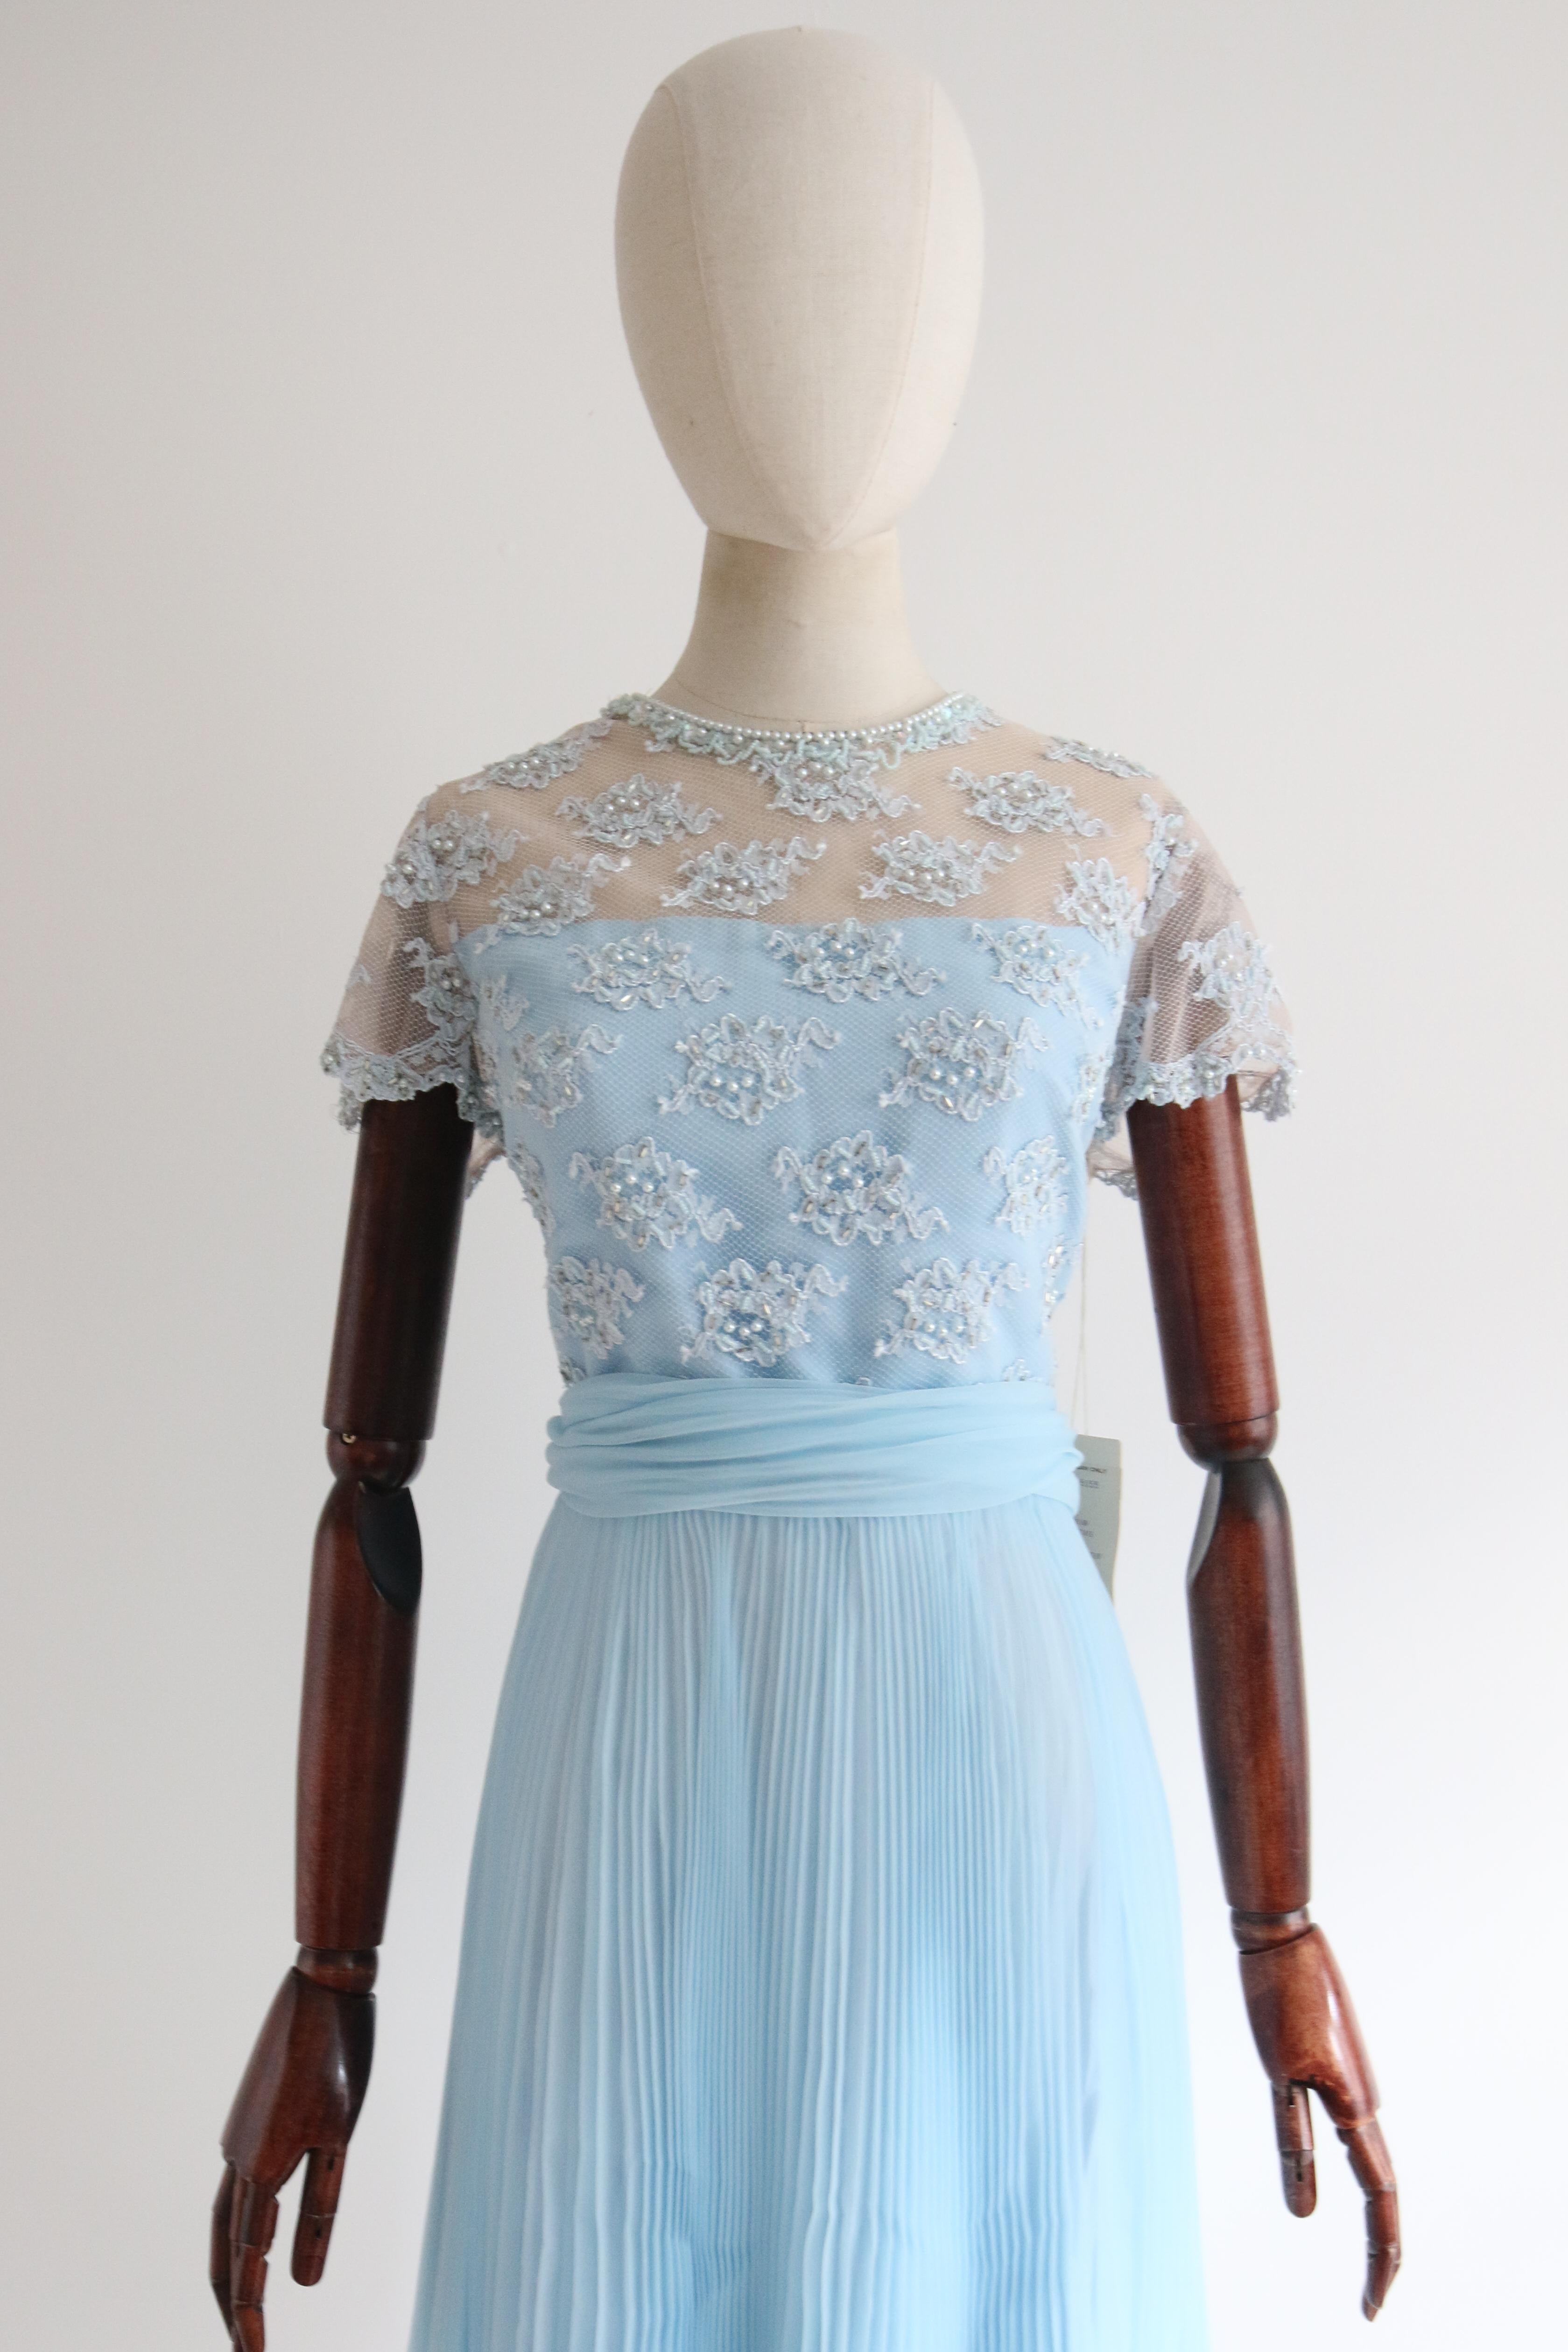 Dieses originelle Kleid aus den 1960er Jahren mit blauer Blumenspitze, die wiederum mit blauen Perlen, kleinen blassblauen Glasperlen und silbernen Bügelperlen verziert ist, ist ein echter Blickfang und genau das richtige Stück für Ihre